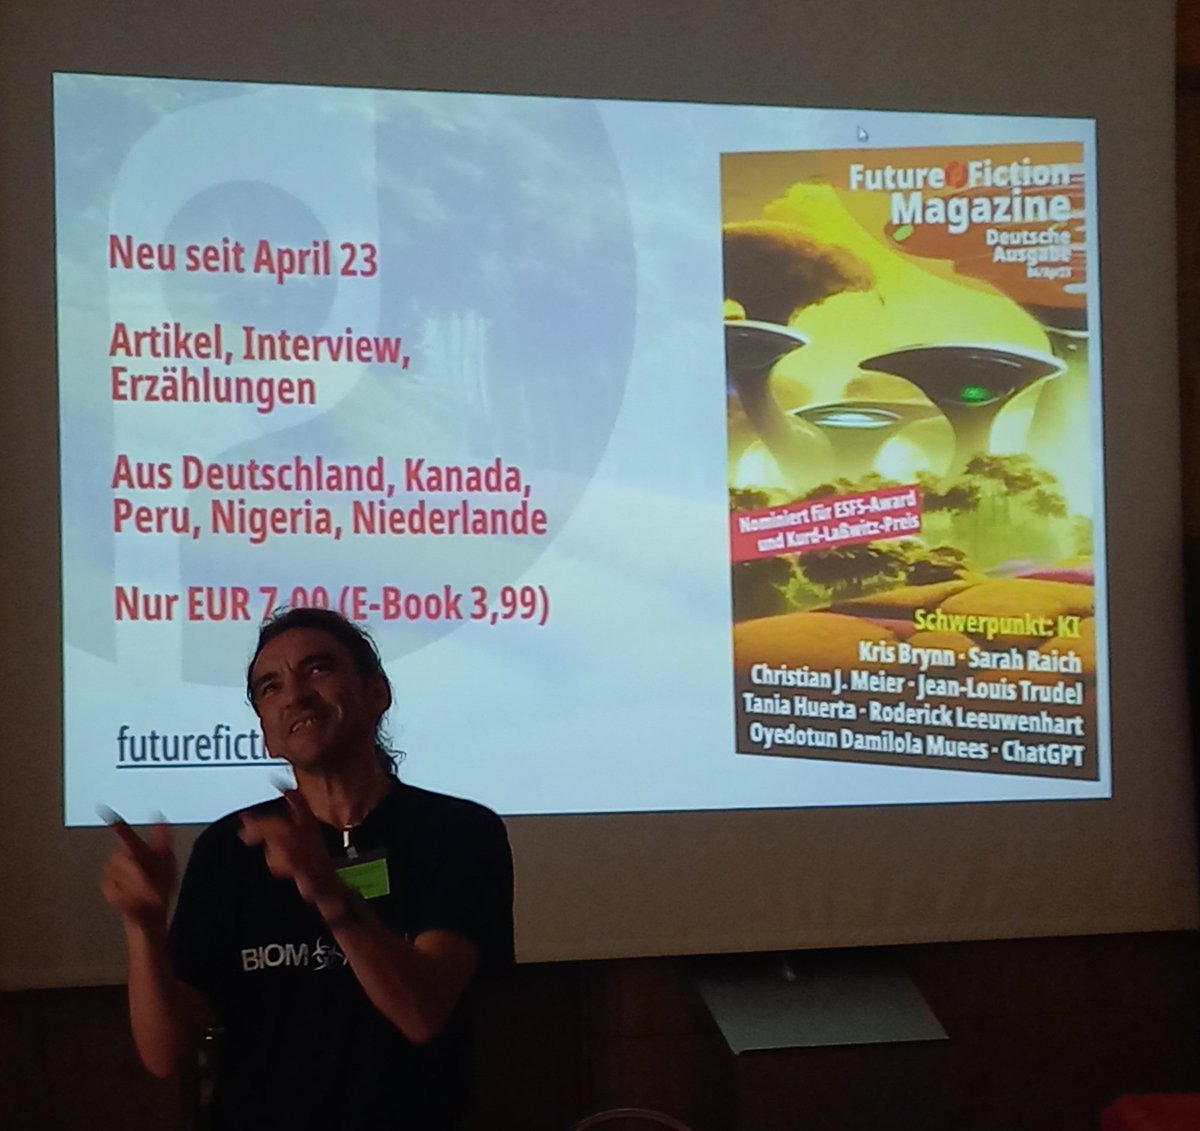 Das ist @uwepost - Herausgeber des #FutureFictionMagazin s (@Klaudia_Seibel : der seine Präsentation ganz allein starten konnte). 
#PhantTa39 #ClimateFiction #PhanBibWZ #FutureFiction #Literatur #Klimakrise